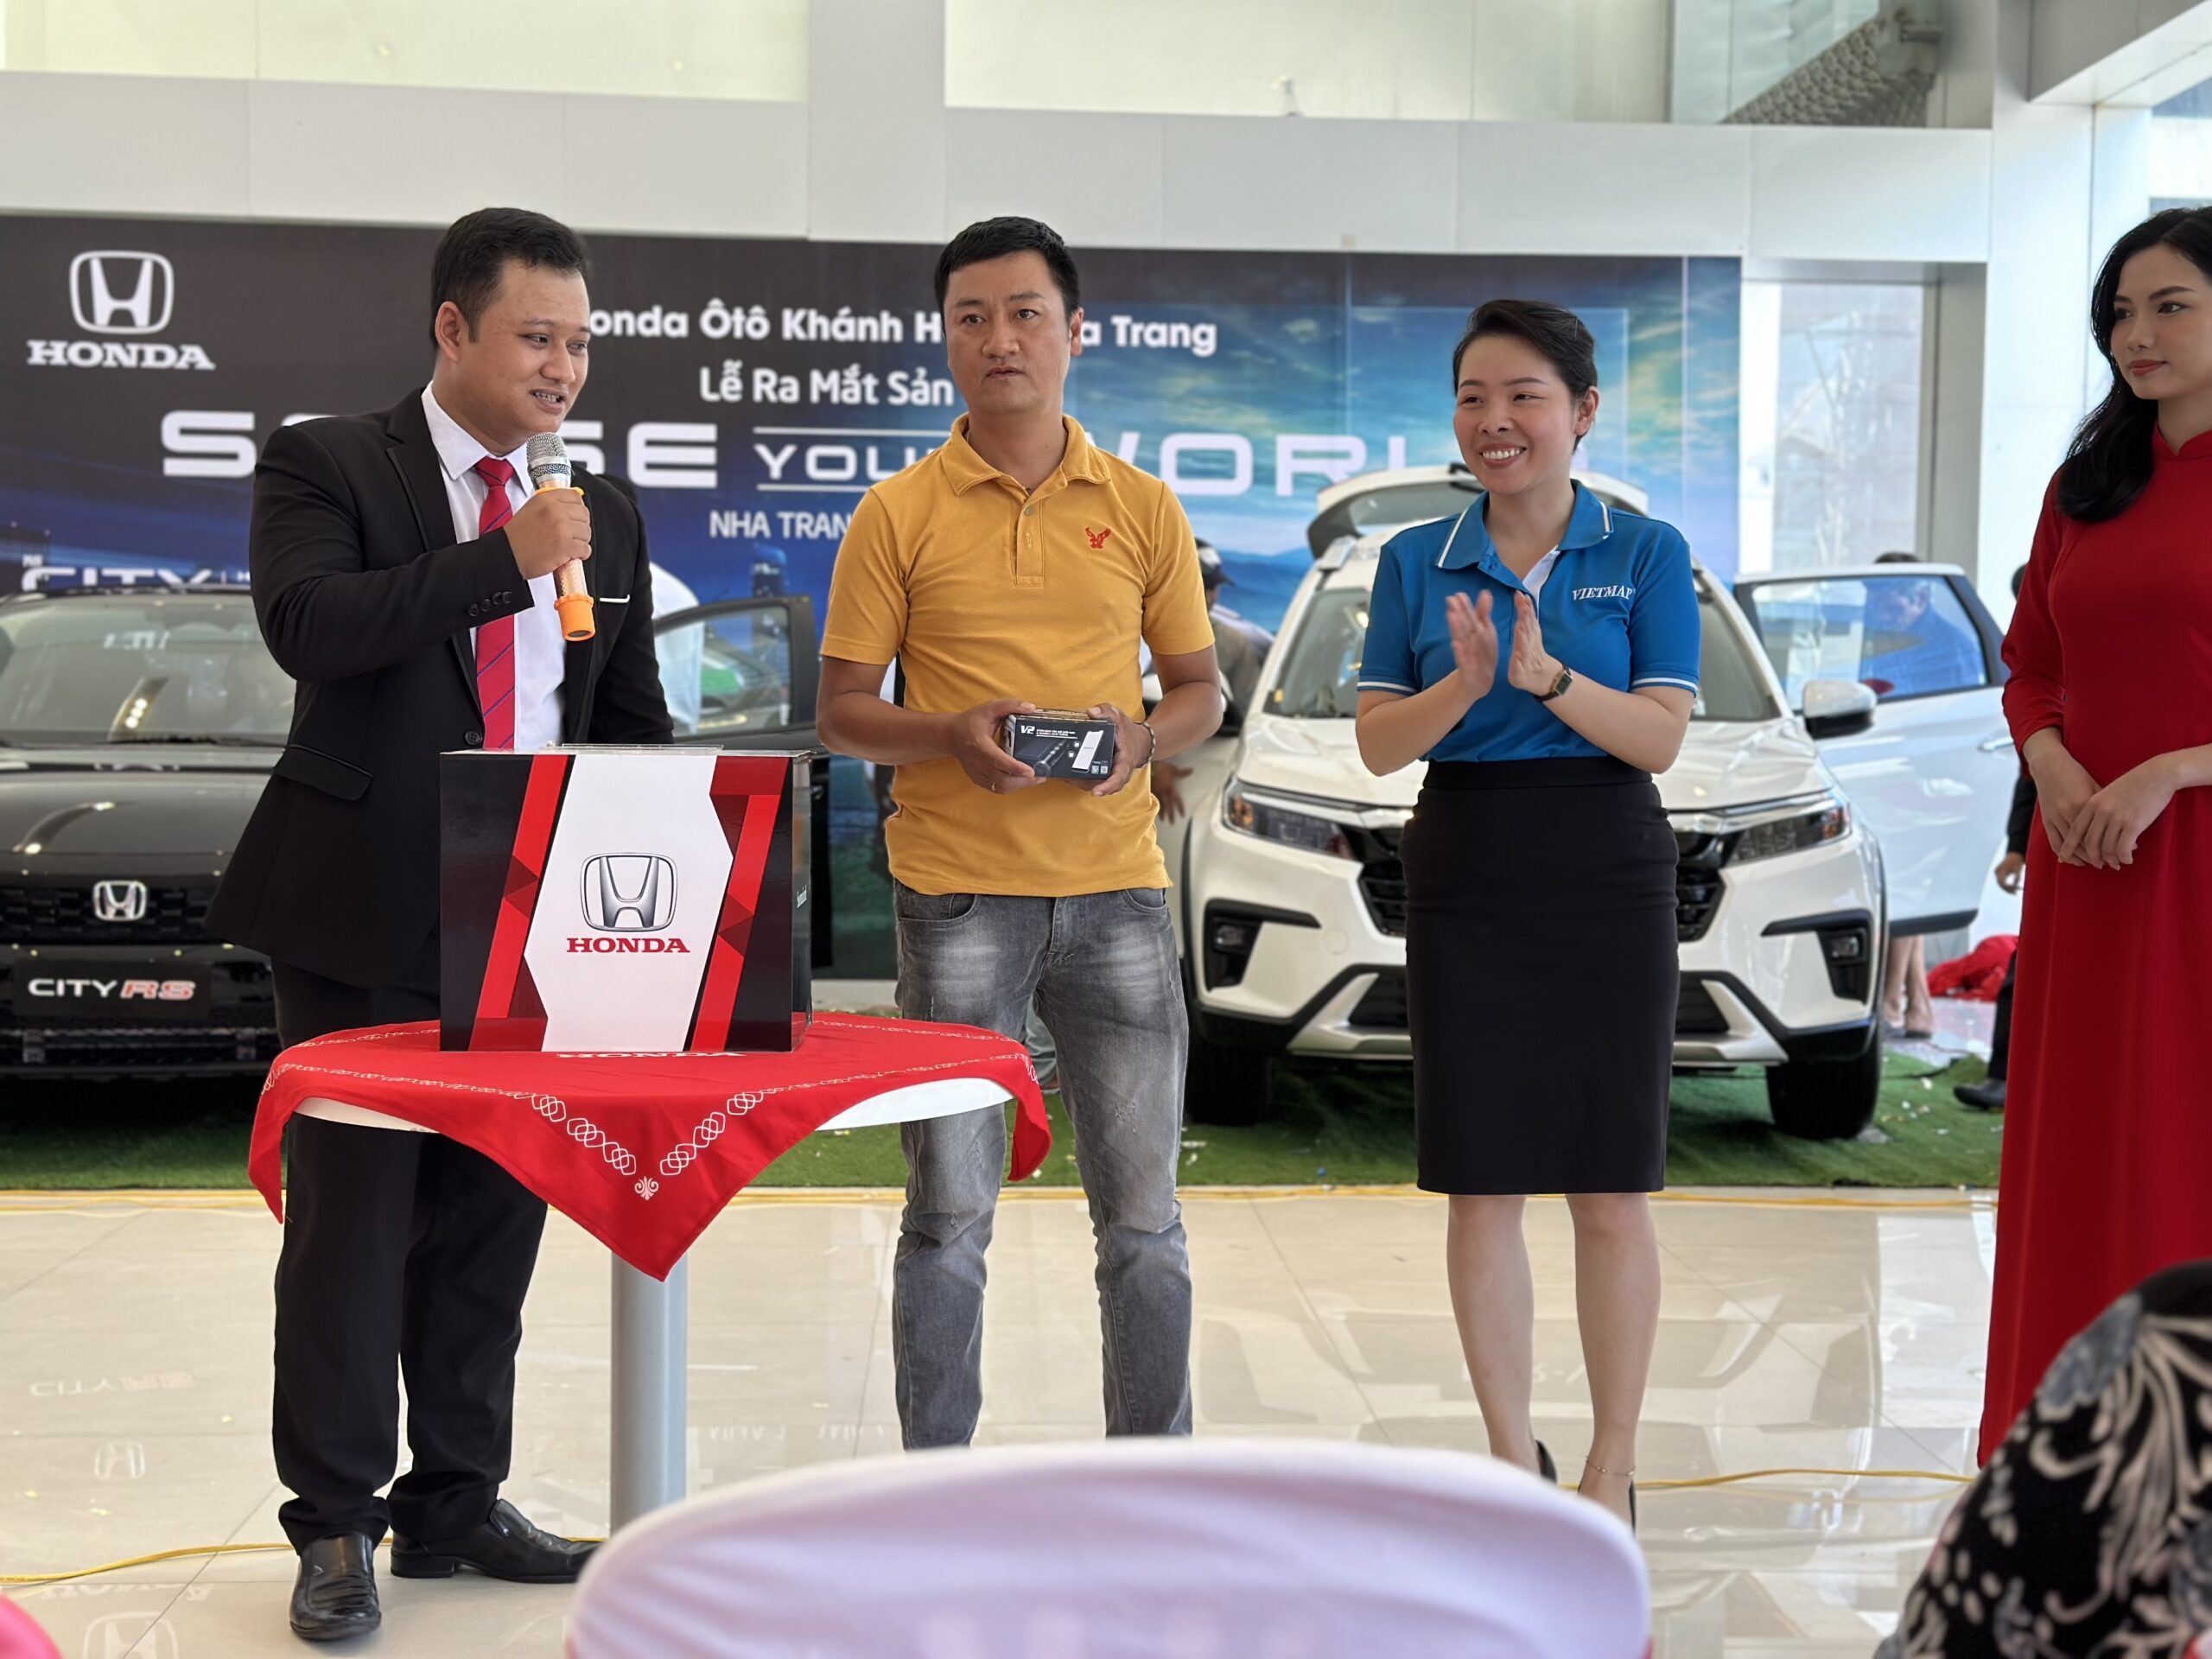 Honda Ôtô Khánh Hòa - Nha Trang ra mắt Honda CITY mới & Honda BR-V 7 chỗ hoàn toàn mới